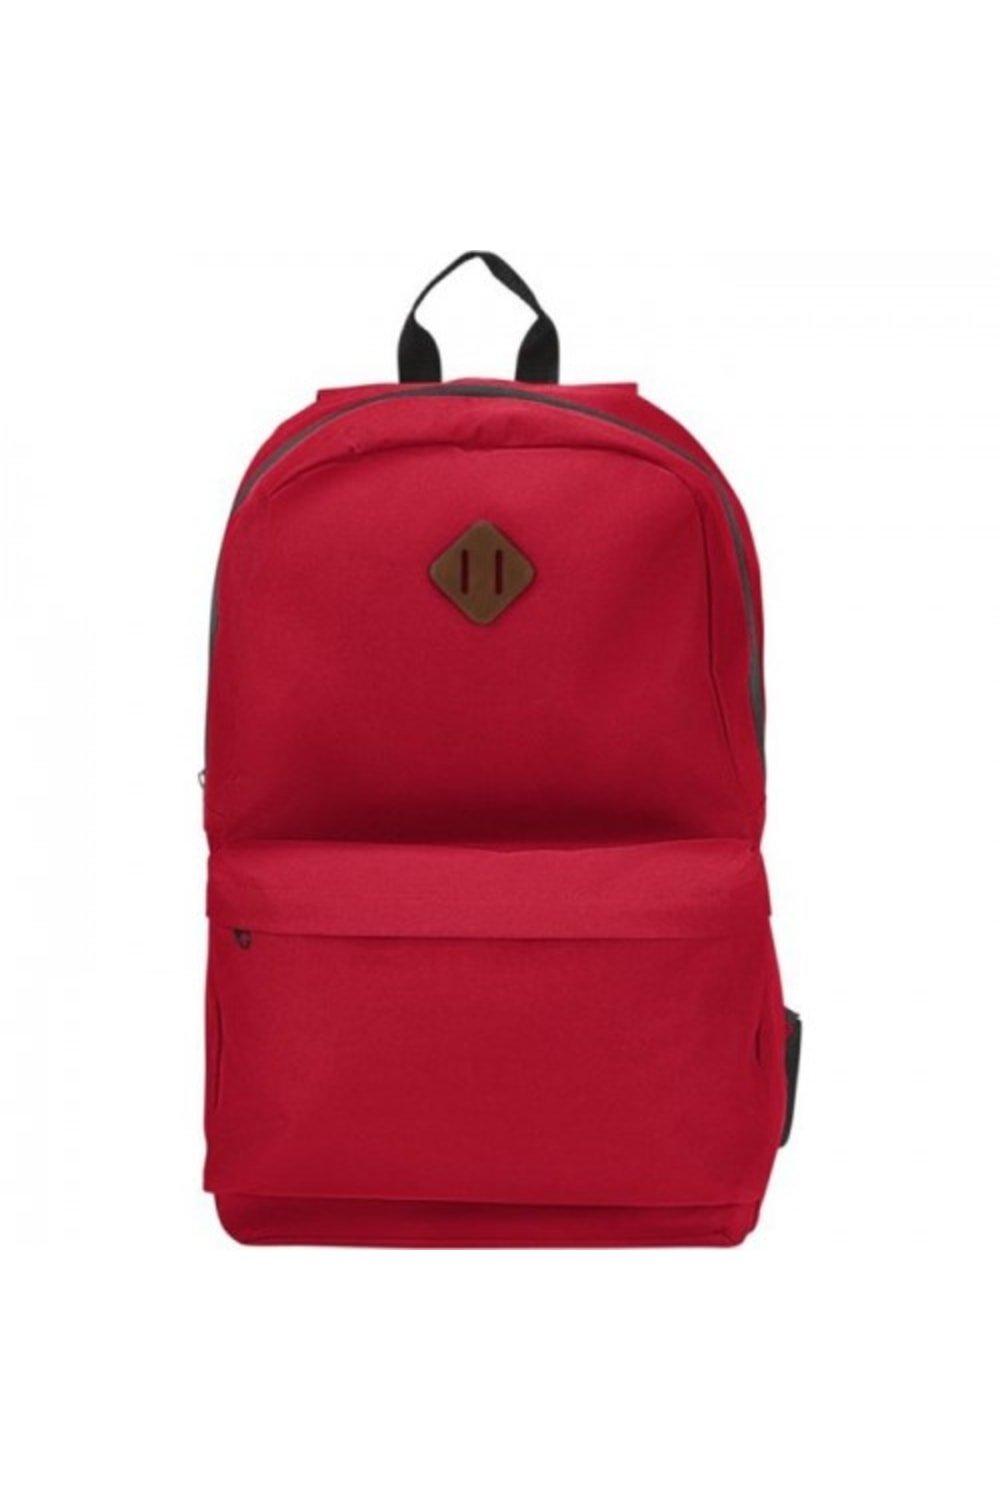 Рюкзак для ноутбука Stratta Bullet, красный цена и фото